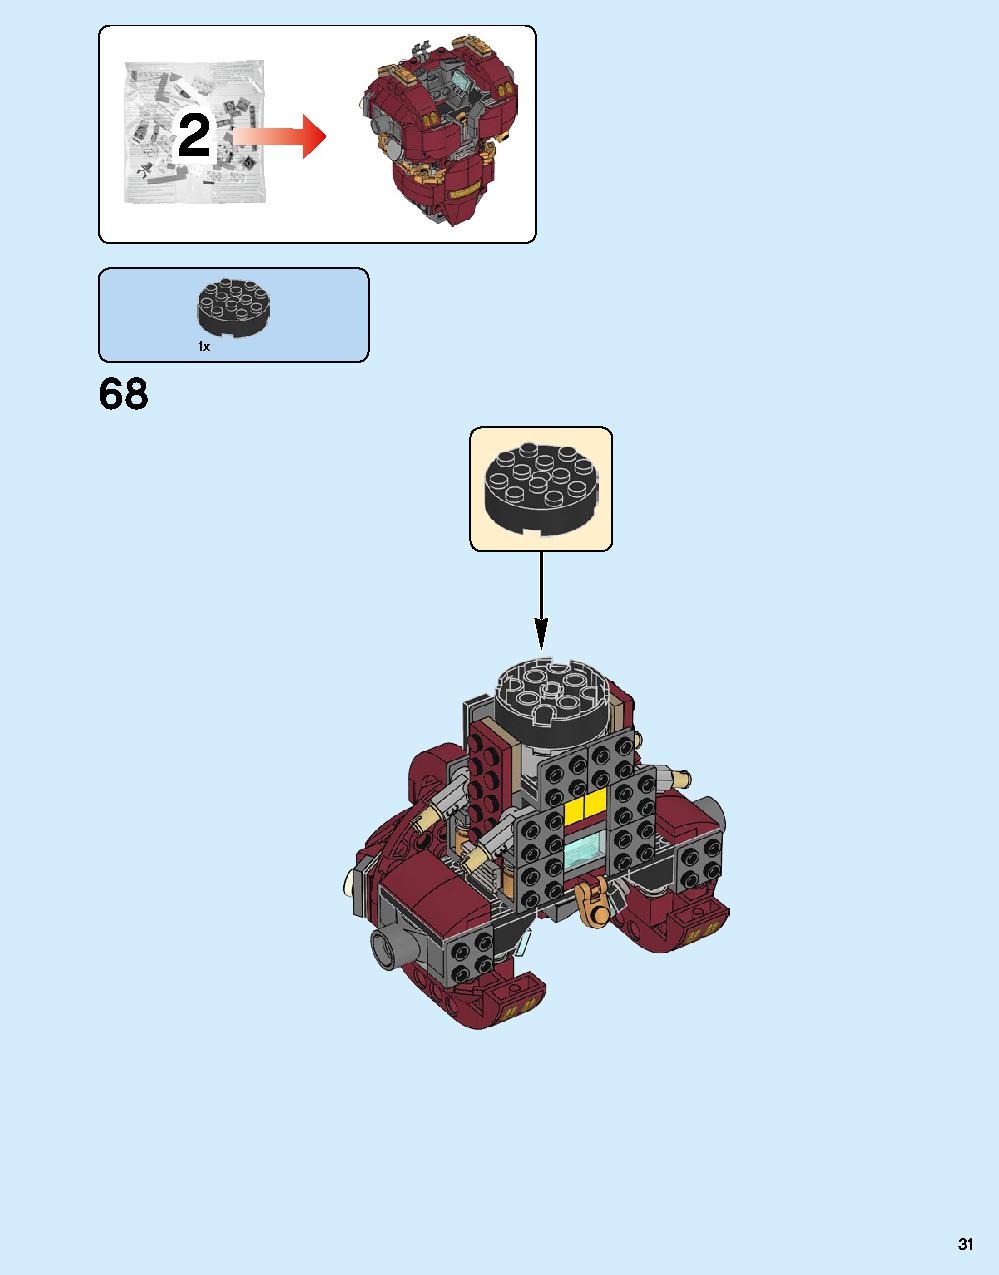 ハルクバスター：ウルトロン・エディション 76105 レゴの商品情報 レゴの説明書・組立方法 31 page